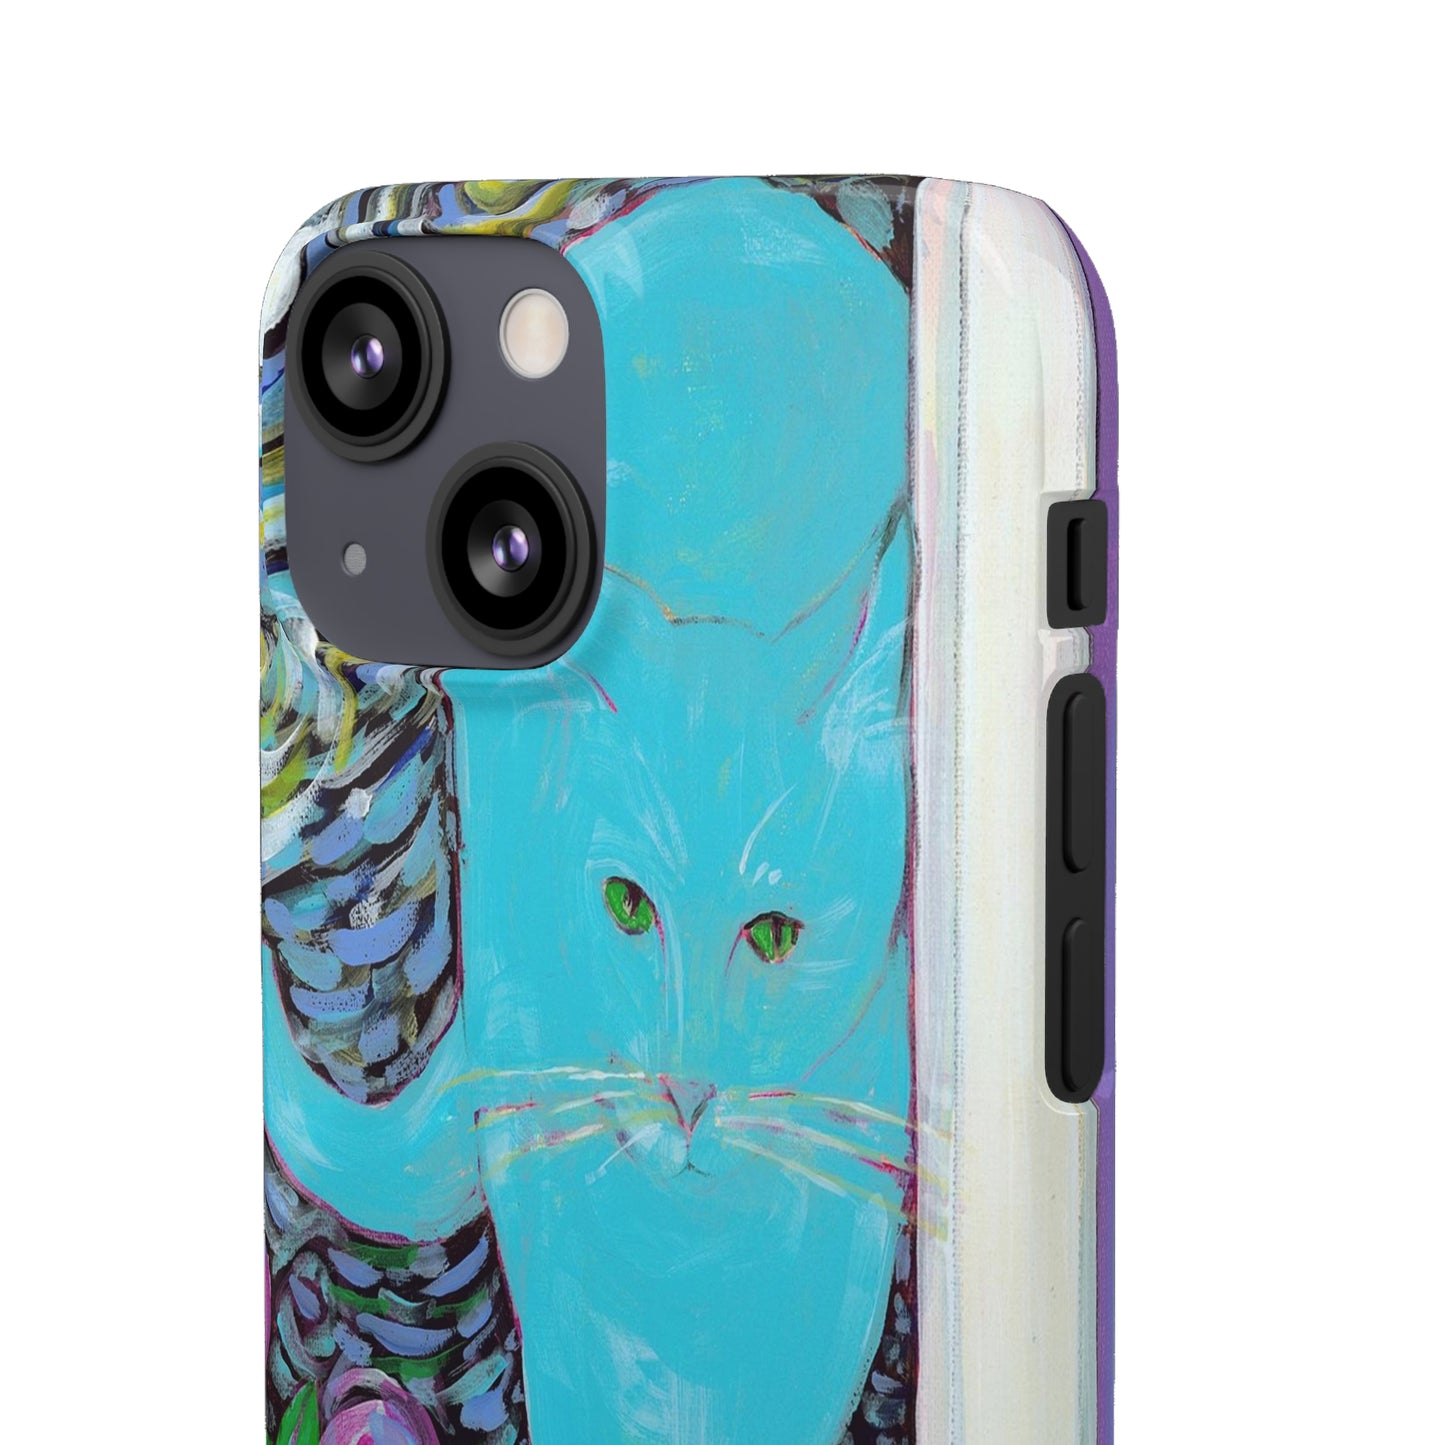 Cat Van Gogh iPhone Case